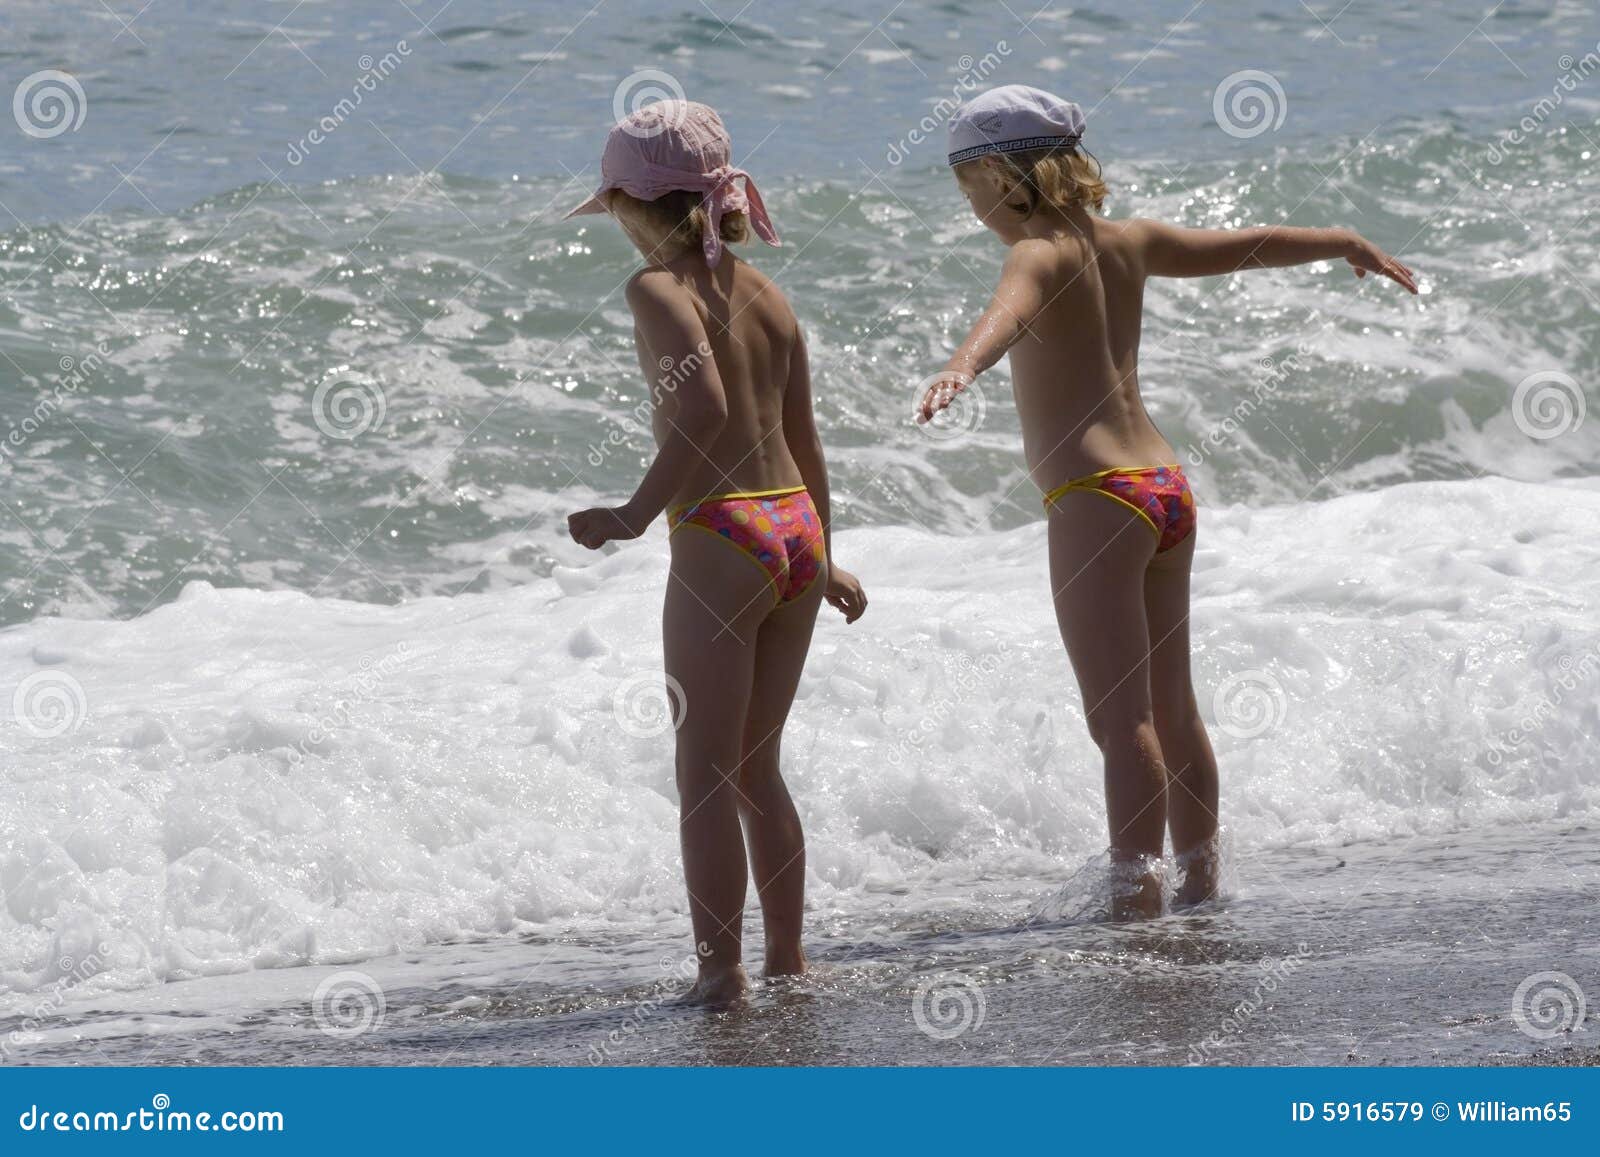 фото детей на голом пляже фото 24